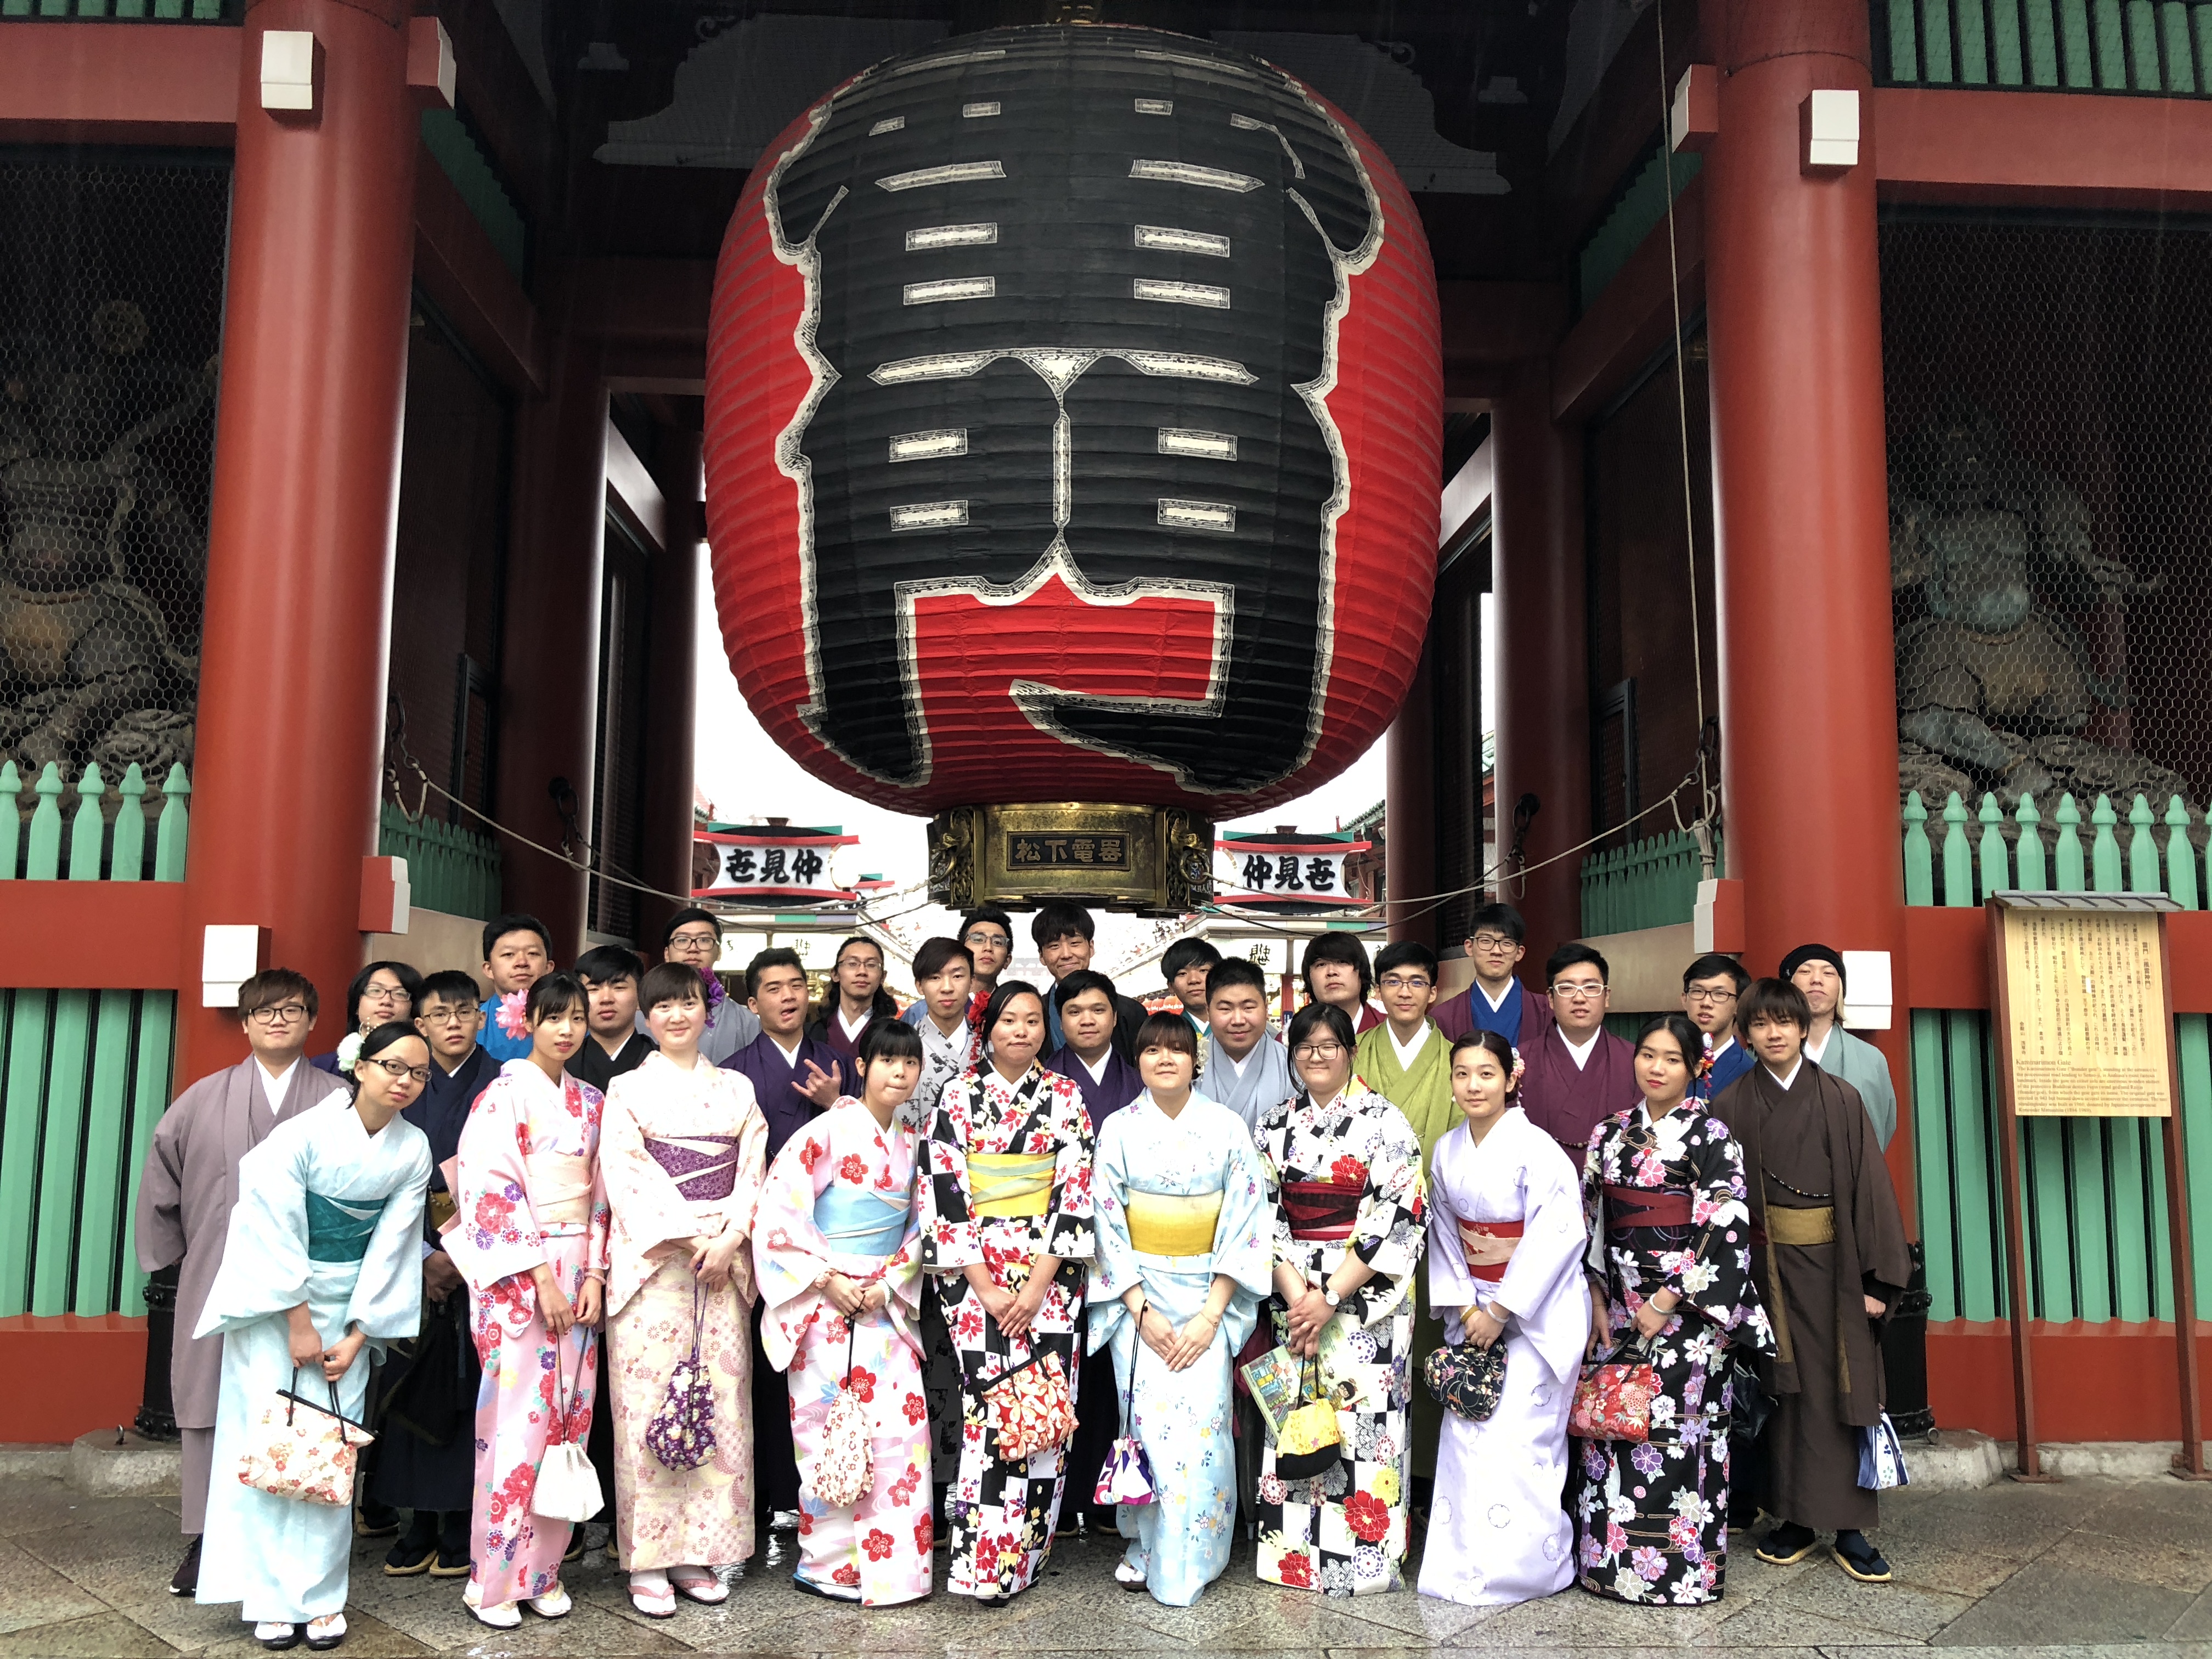 同學在日本透過參觀有宗教文化特色的神社、穿著浴衣等，親身理解日本人的傳統文化及習慣。